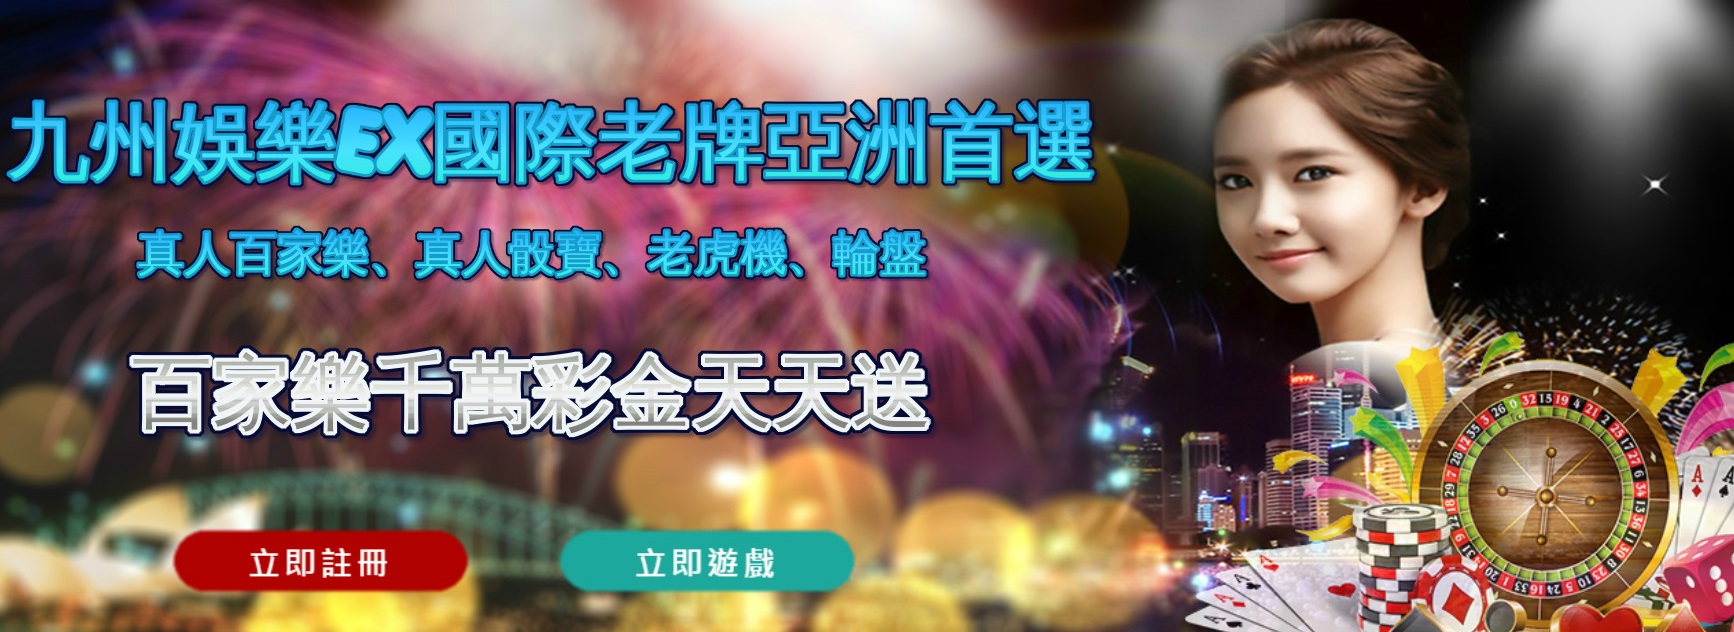 台灣線上娛樂城唯一合法娛樂平台多款遊戲2...